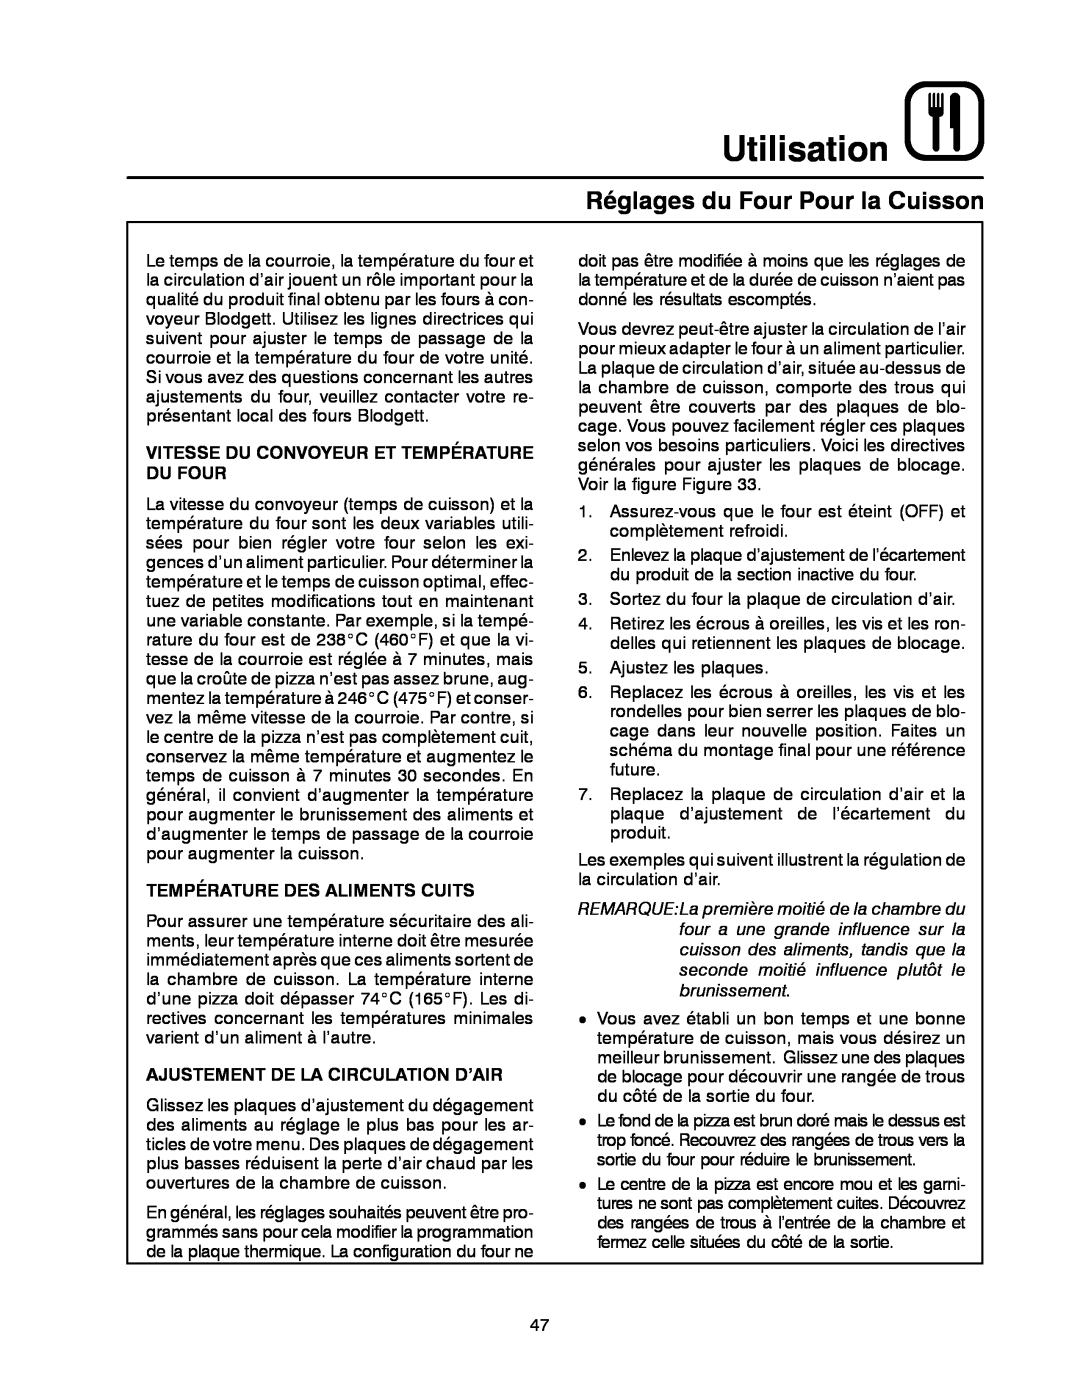 Blodgett MT1828E, MT1828G manual Réglages du Four Pour la Cuisson, Utilisation, Vitesse Du Convoyeur Et Température Du Four 